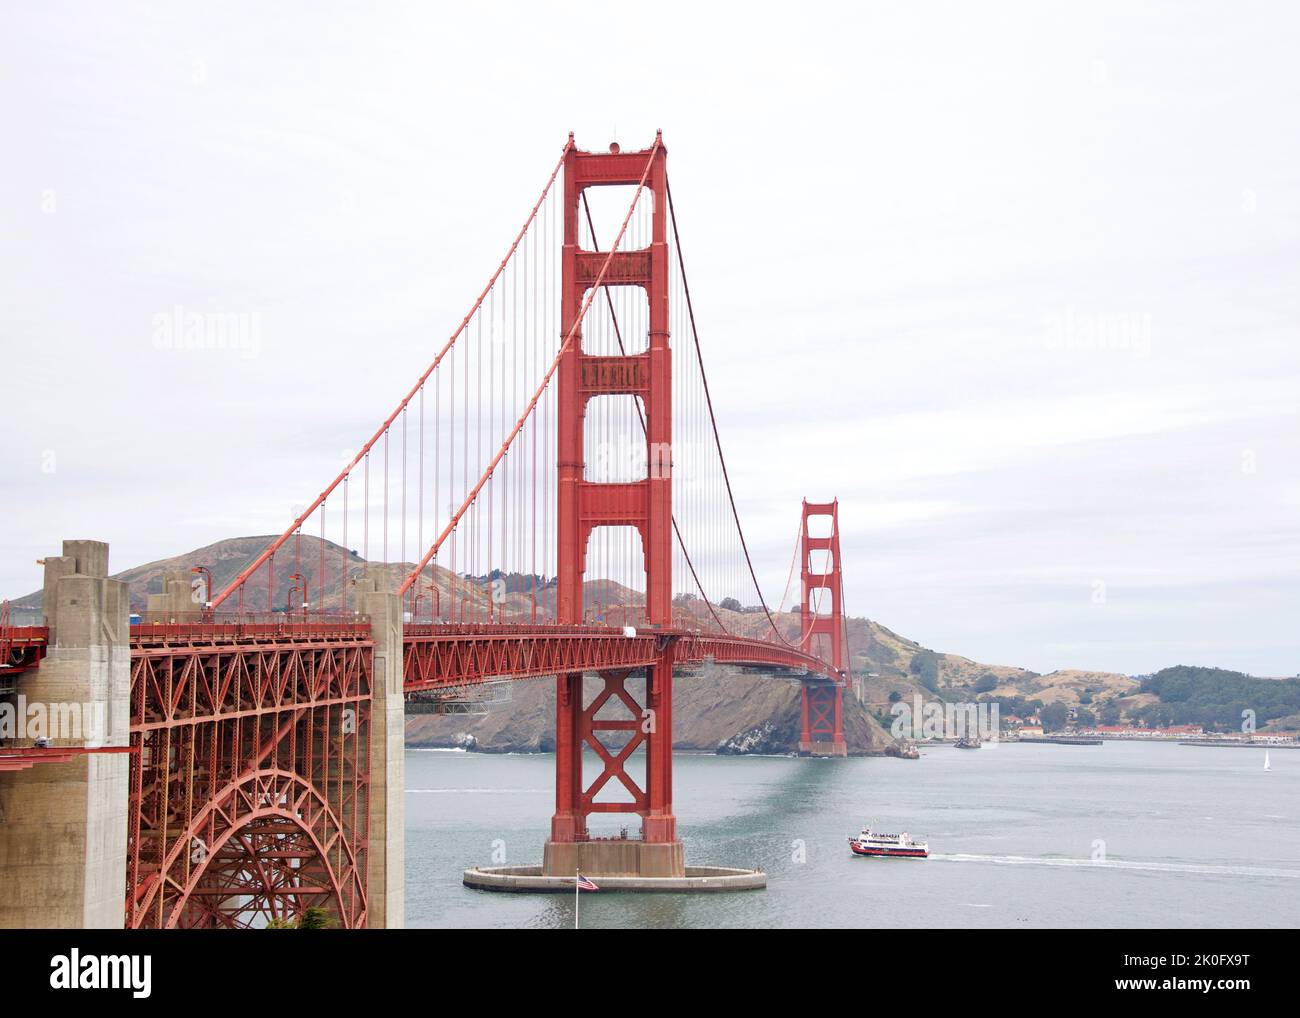 Golden Gate Bridge par temps clair, des nuages soufflent dans le ciel. Bateau rouge dans l'eau sous le pont. Banque D'Images